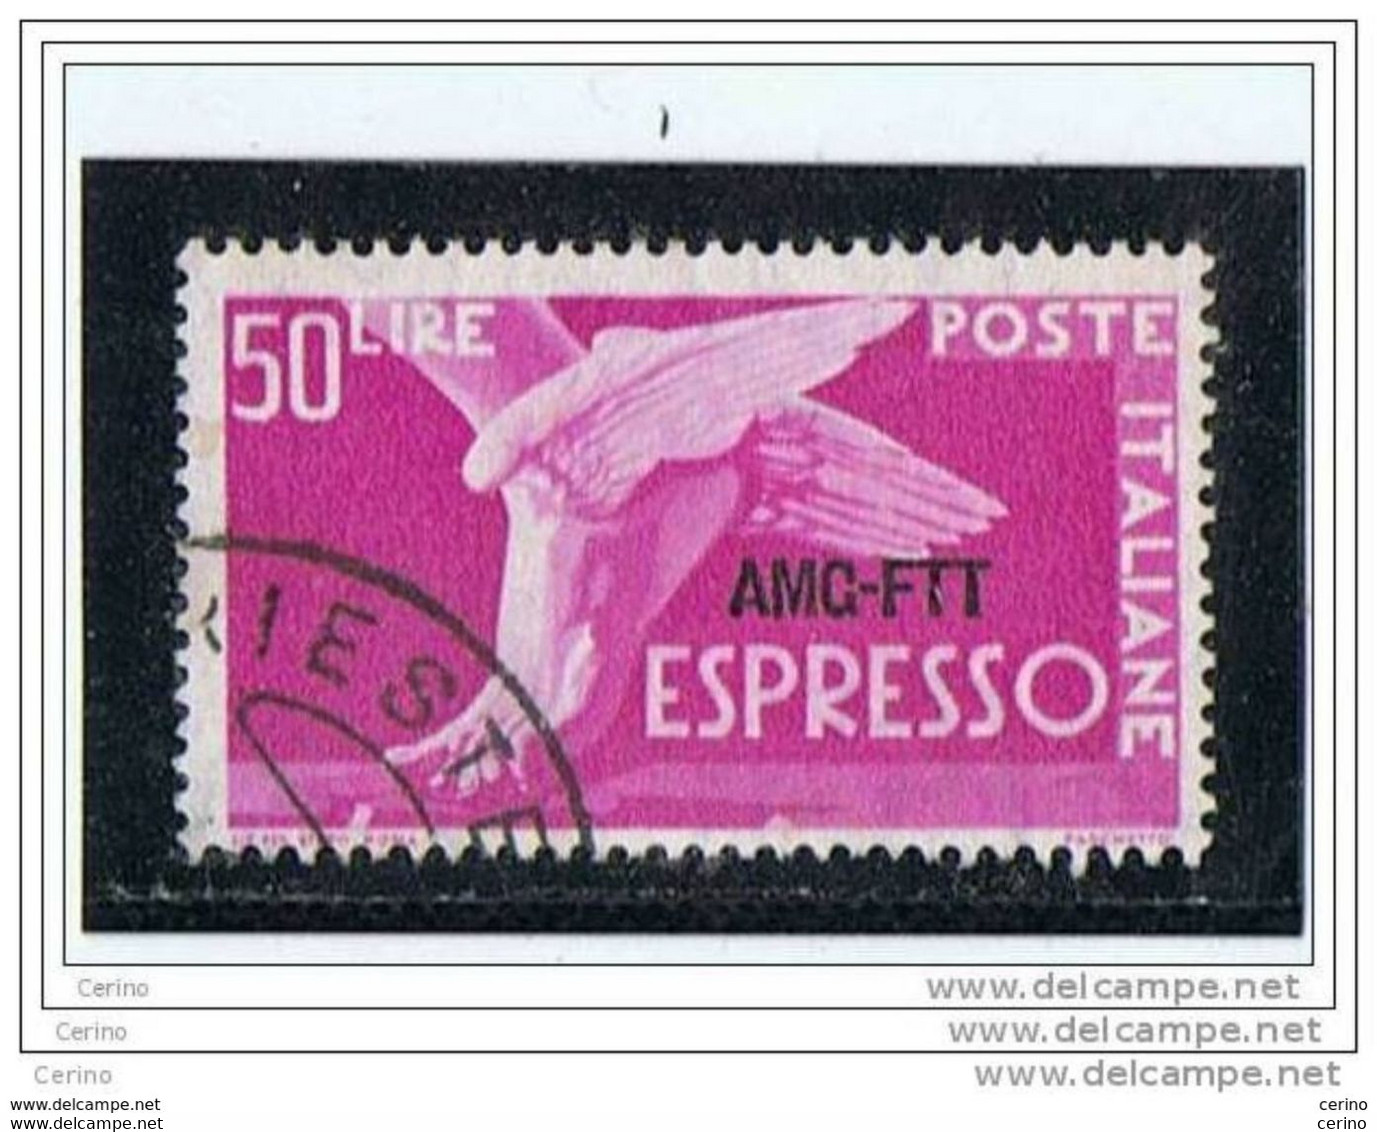 TRIESTE  A:  1953  EX. DEMOCRATICA  -  £. 50  ROSA  LILLA  US. -  FIL. R. III°  -  SASS. 7/I - Express Mail